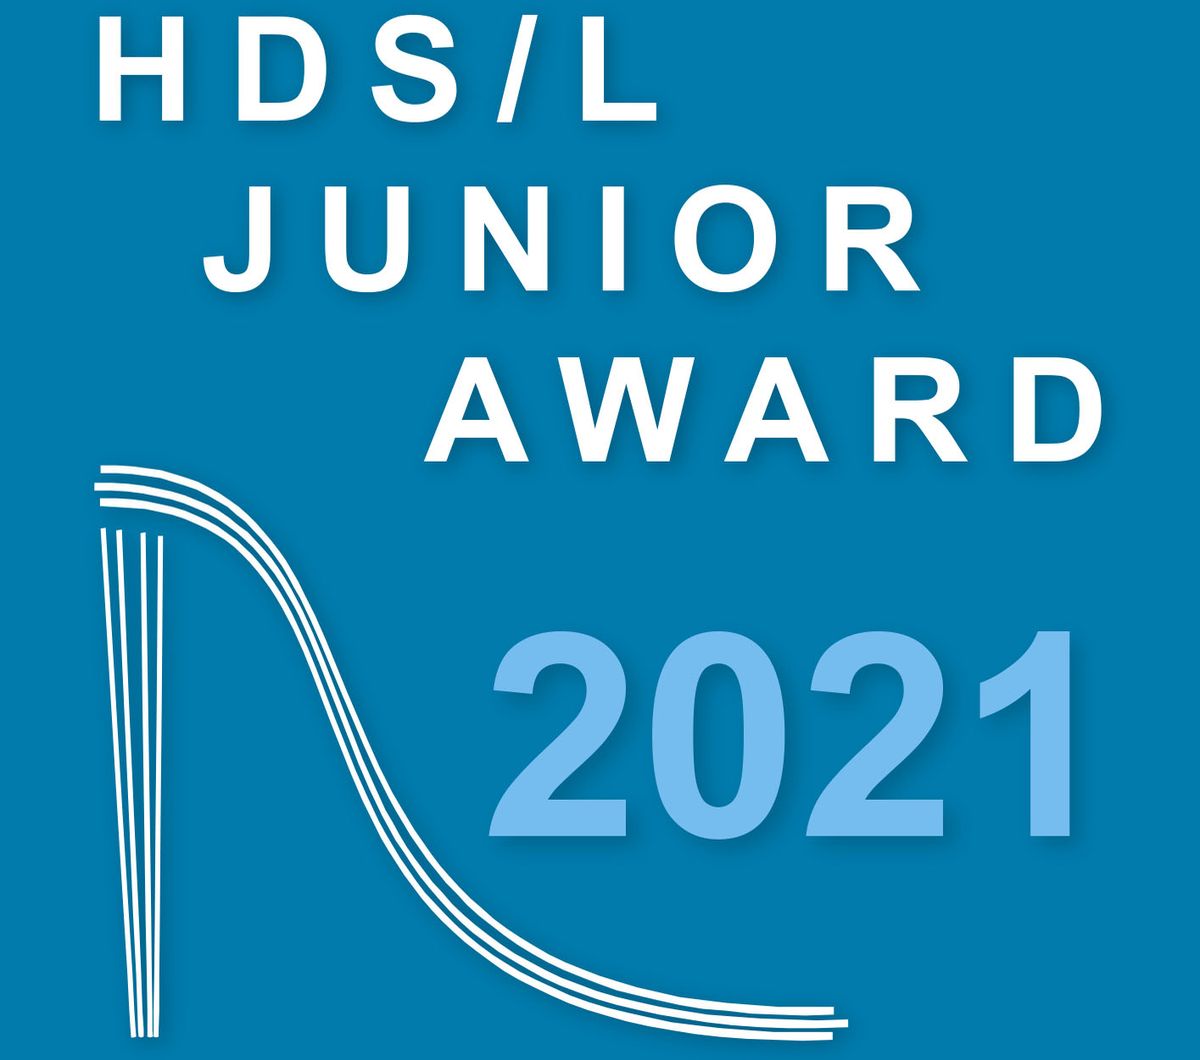 HDS/L Junior Award